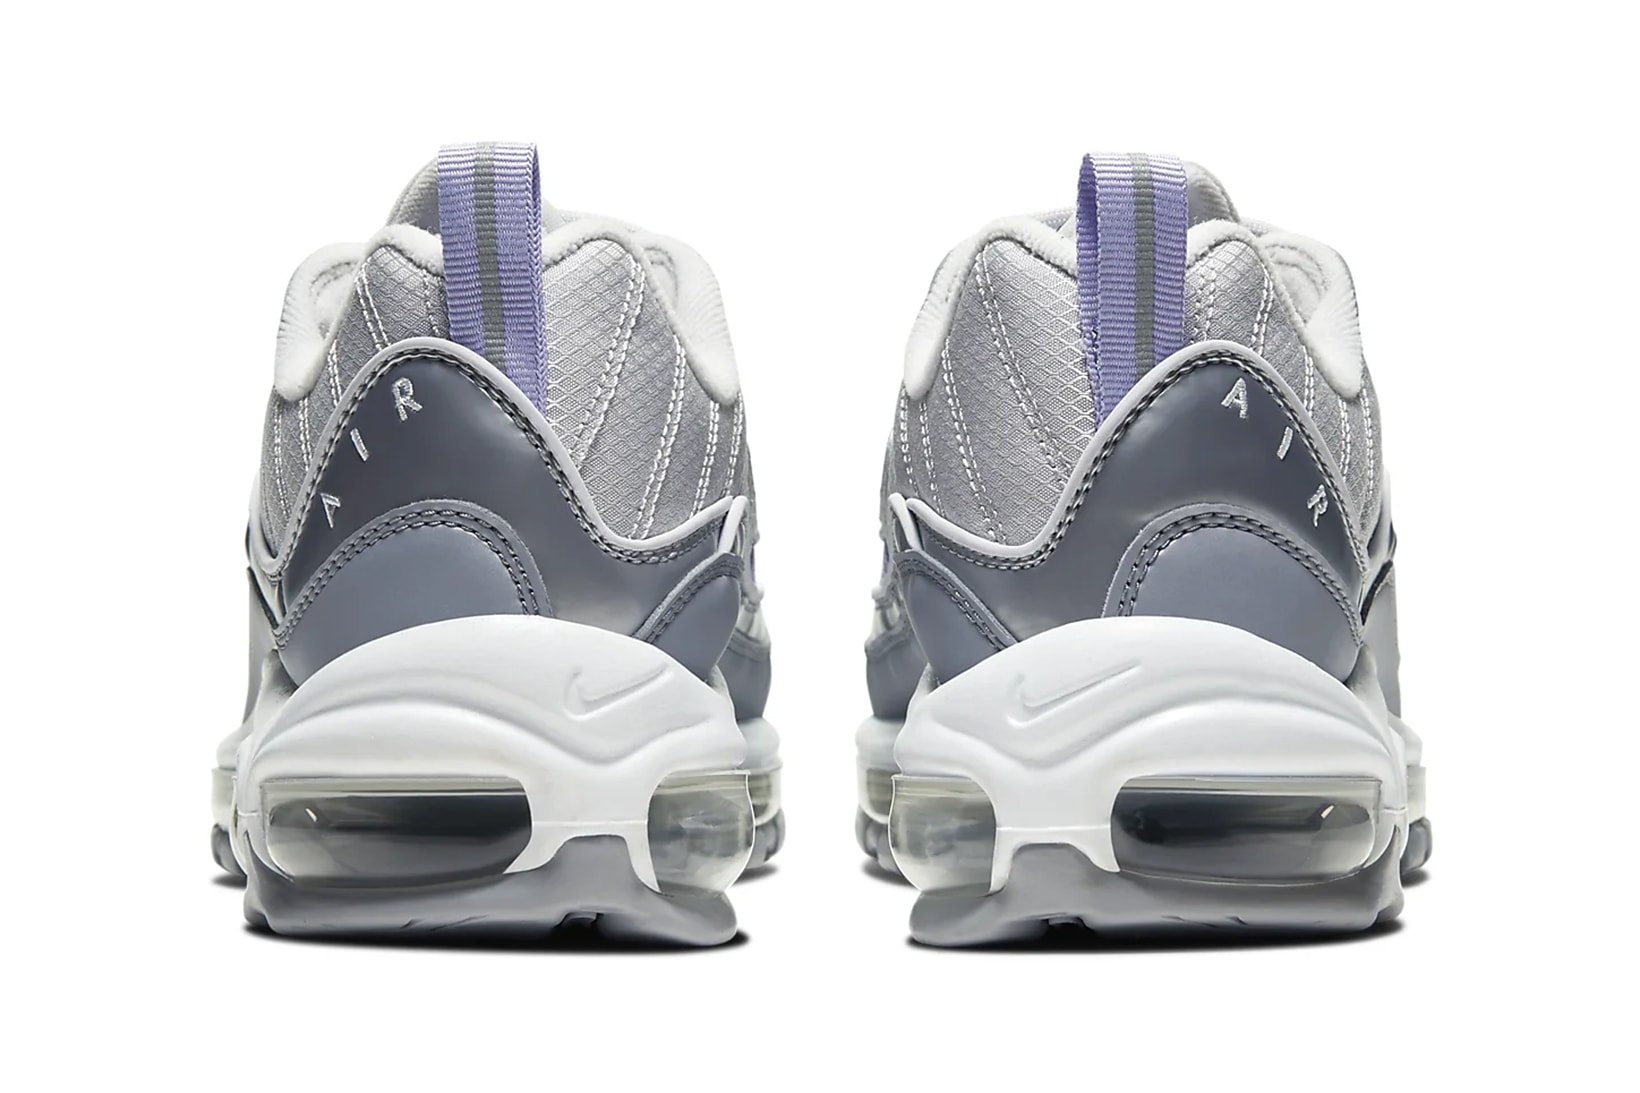 nike air max 98 womens sneakers vast grey metallic platinum wolf grey purple agate shoes footwear sneakerhead